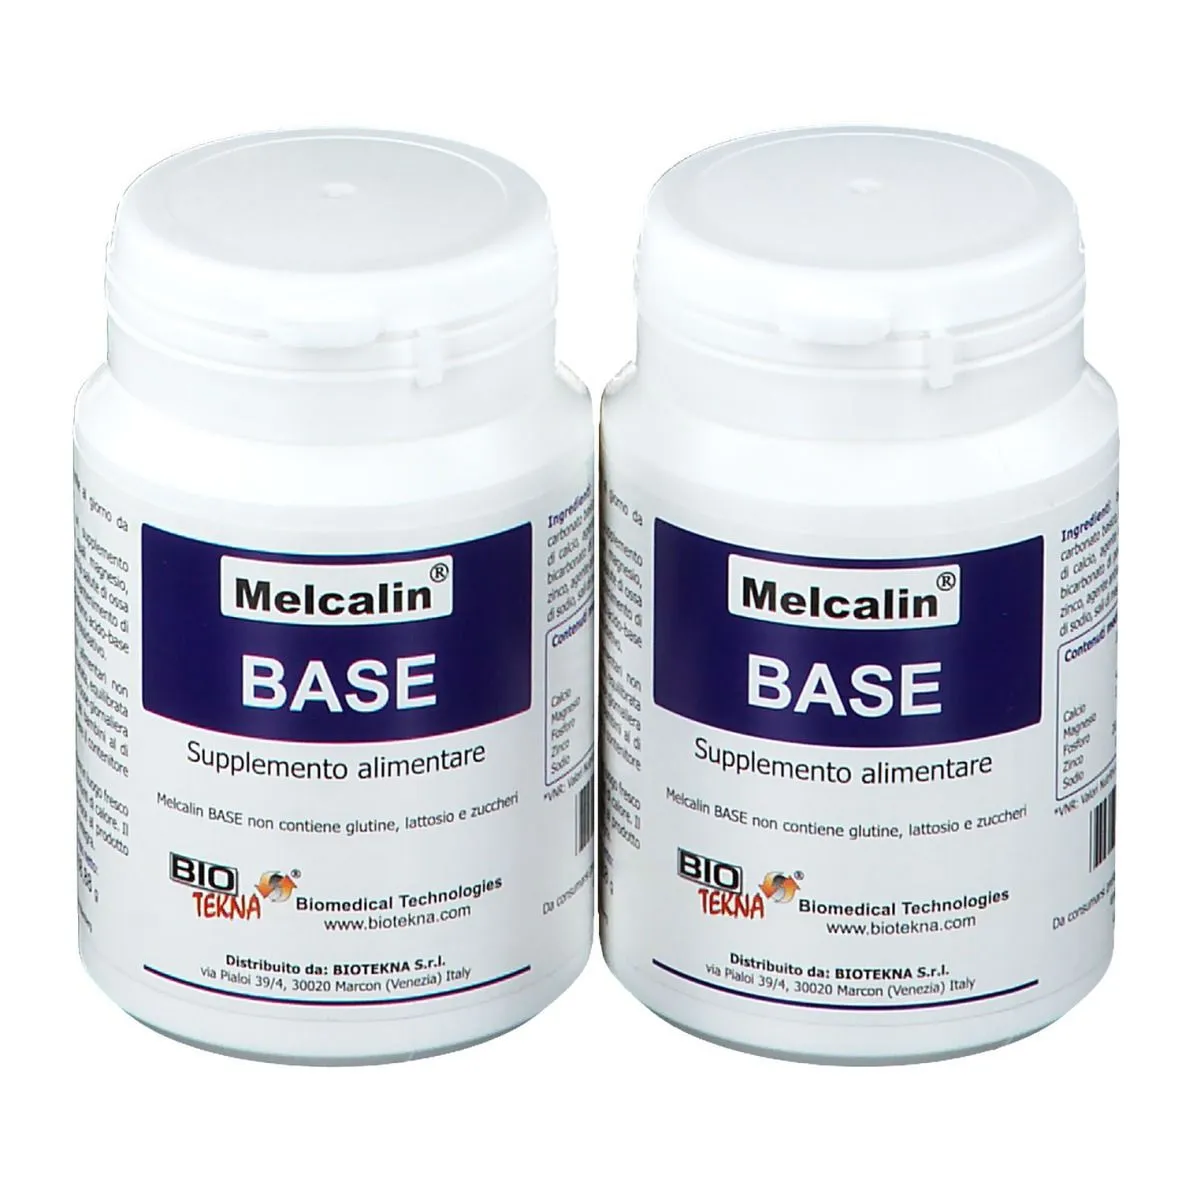 Melcalin® Base Duo Pack